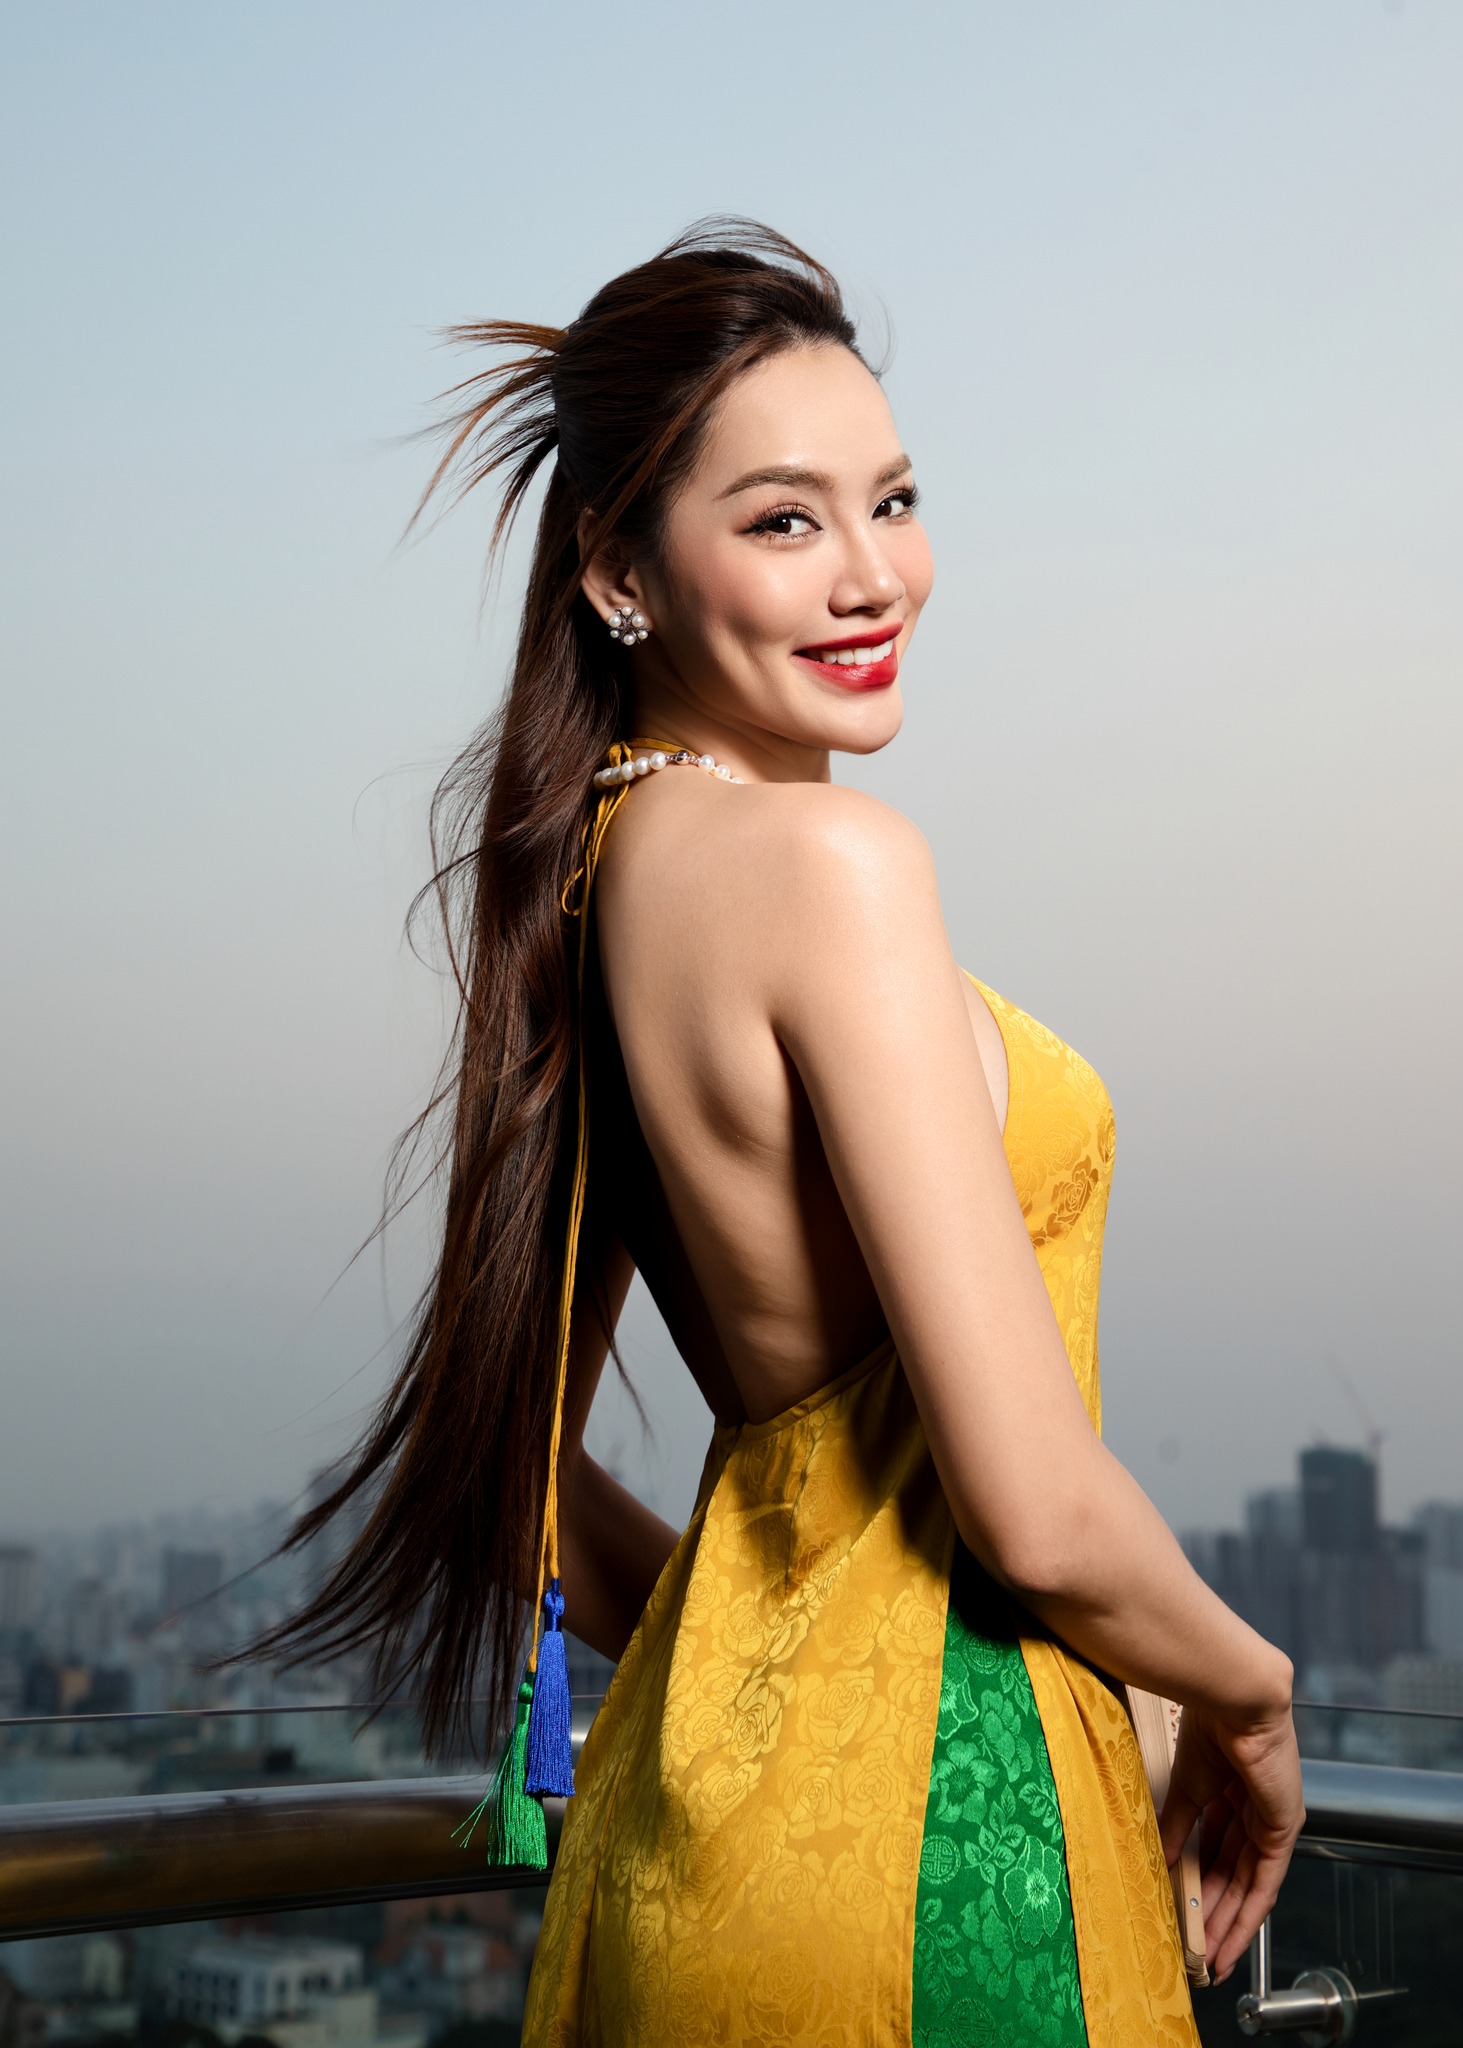 Hoa hậu Lê Hoàng Phương dạo này: Chăm chỉ diện trang phục gợi cảm, đối thủ đáng gờm trong đường đua "nữ hoàng thảm đỏ"- Ảnh 8.